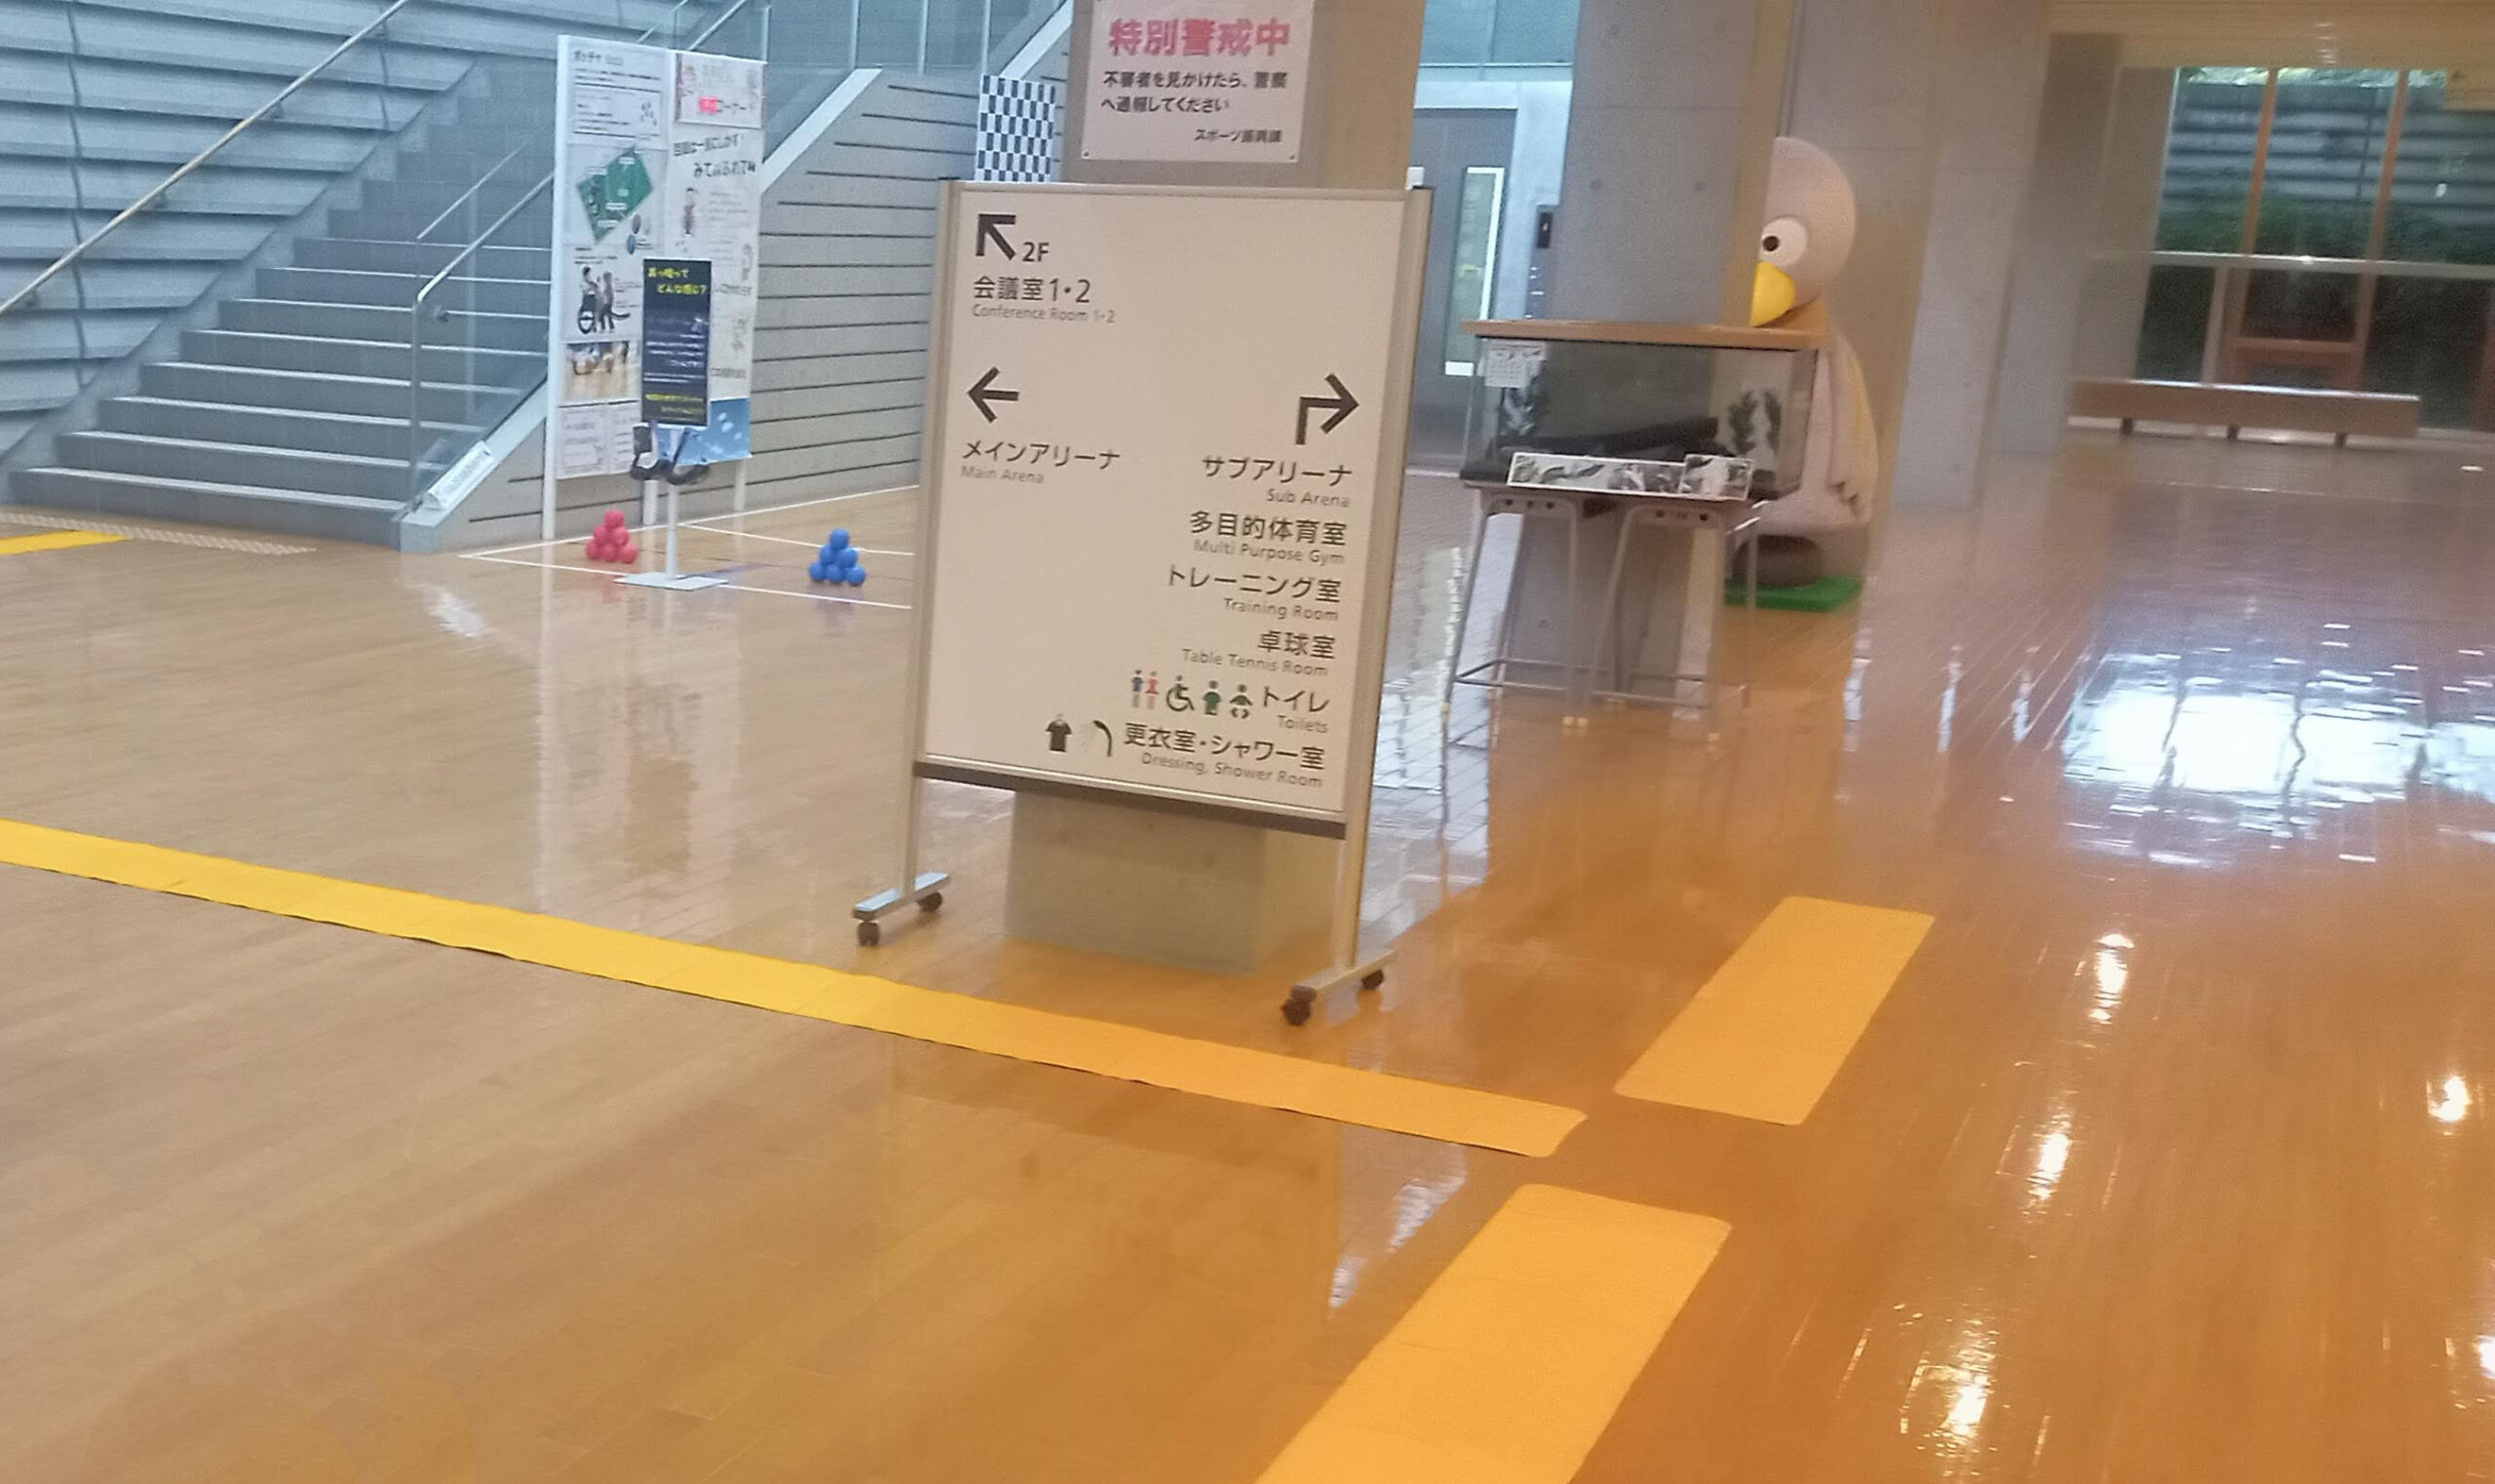 第30回 日本ゴールボール選手権大会 男子予選大会の会場（所沢市民体育館）に誘導マットを一時設置した写真。入口から誘導マットがに方向に設置されている。